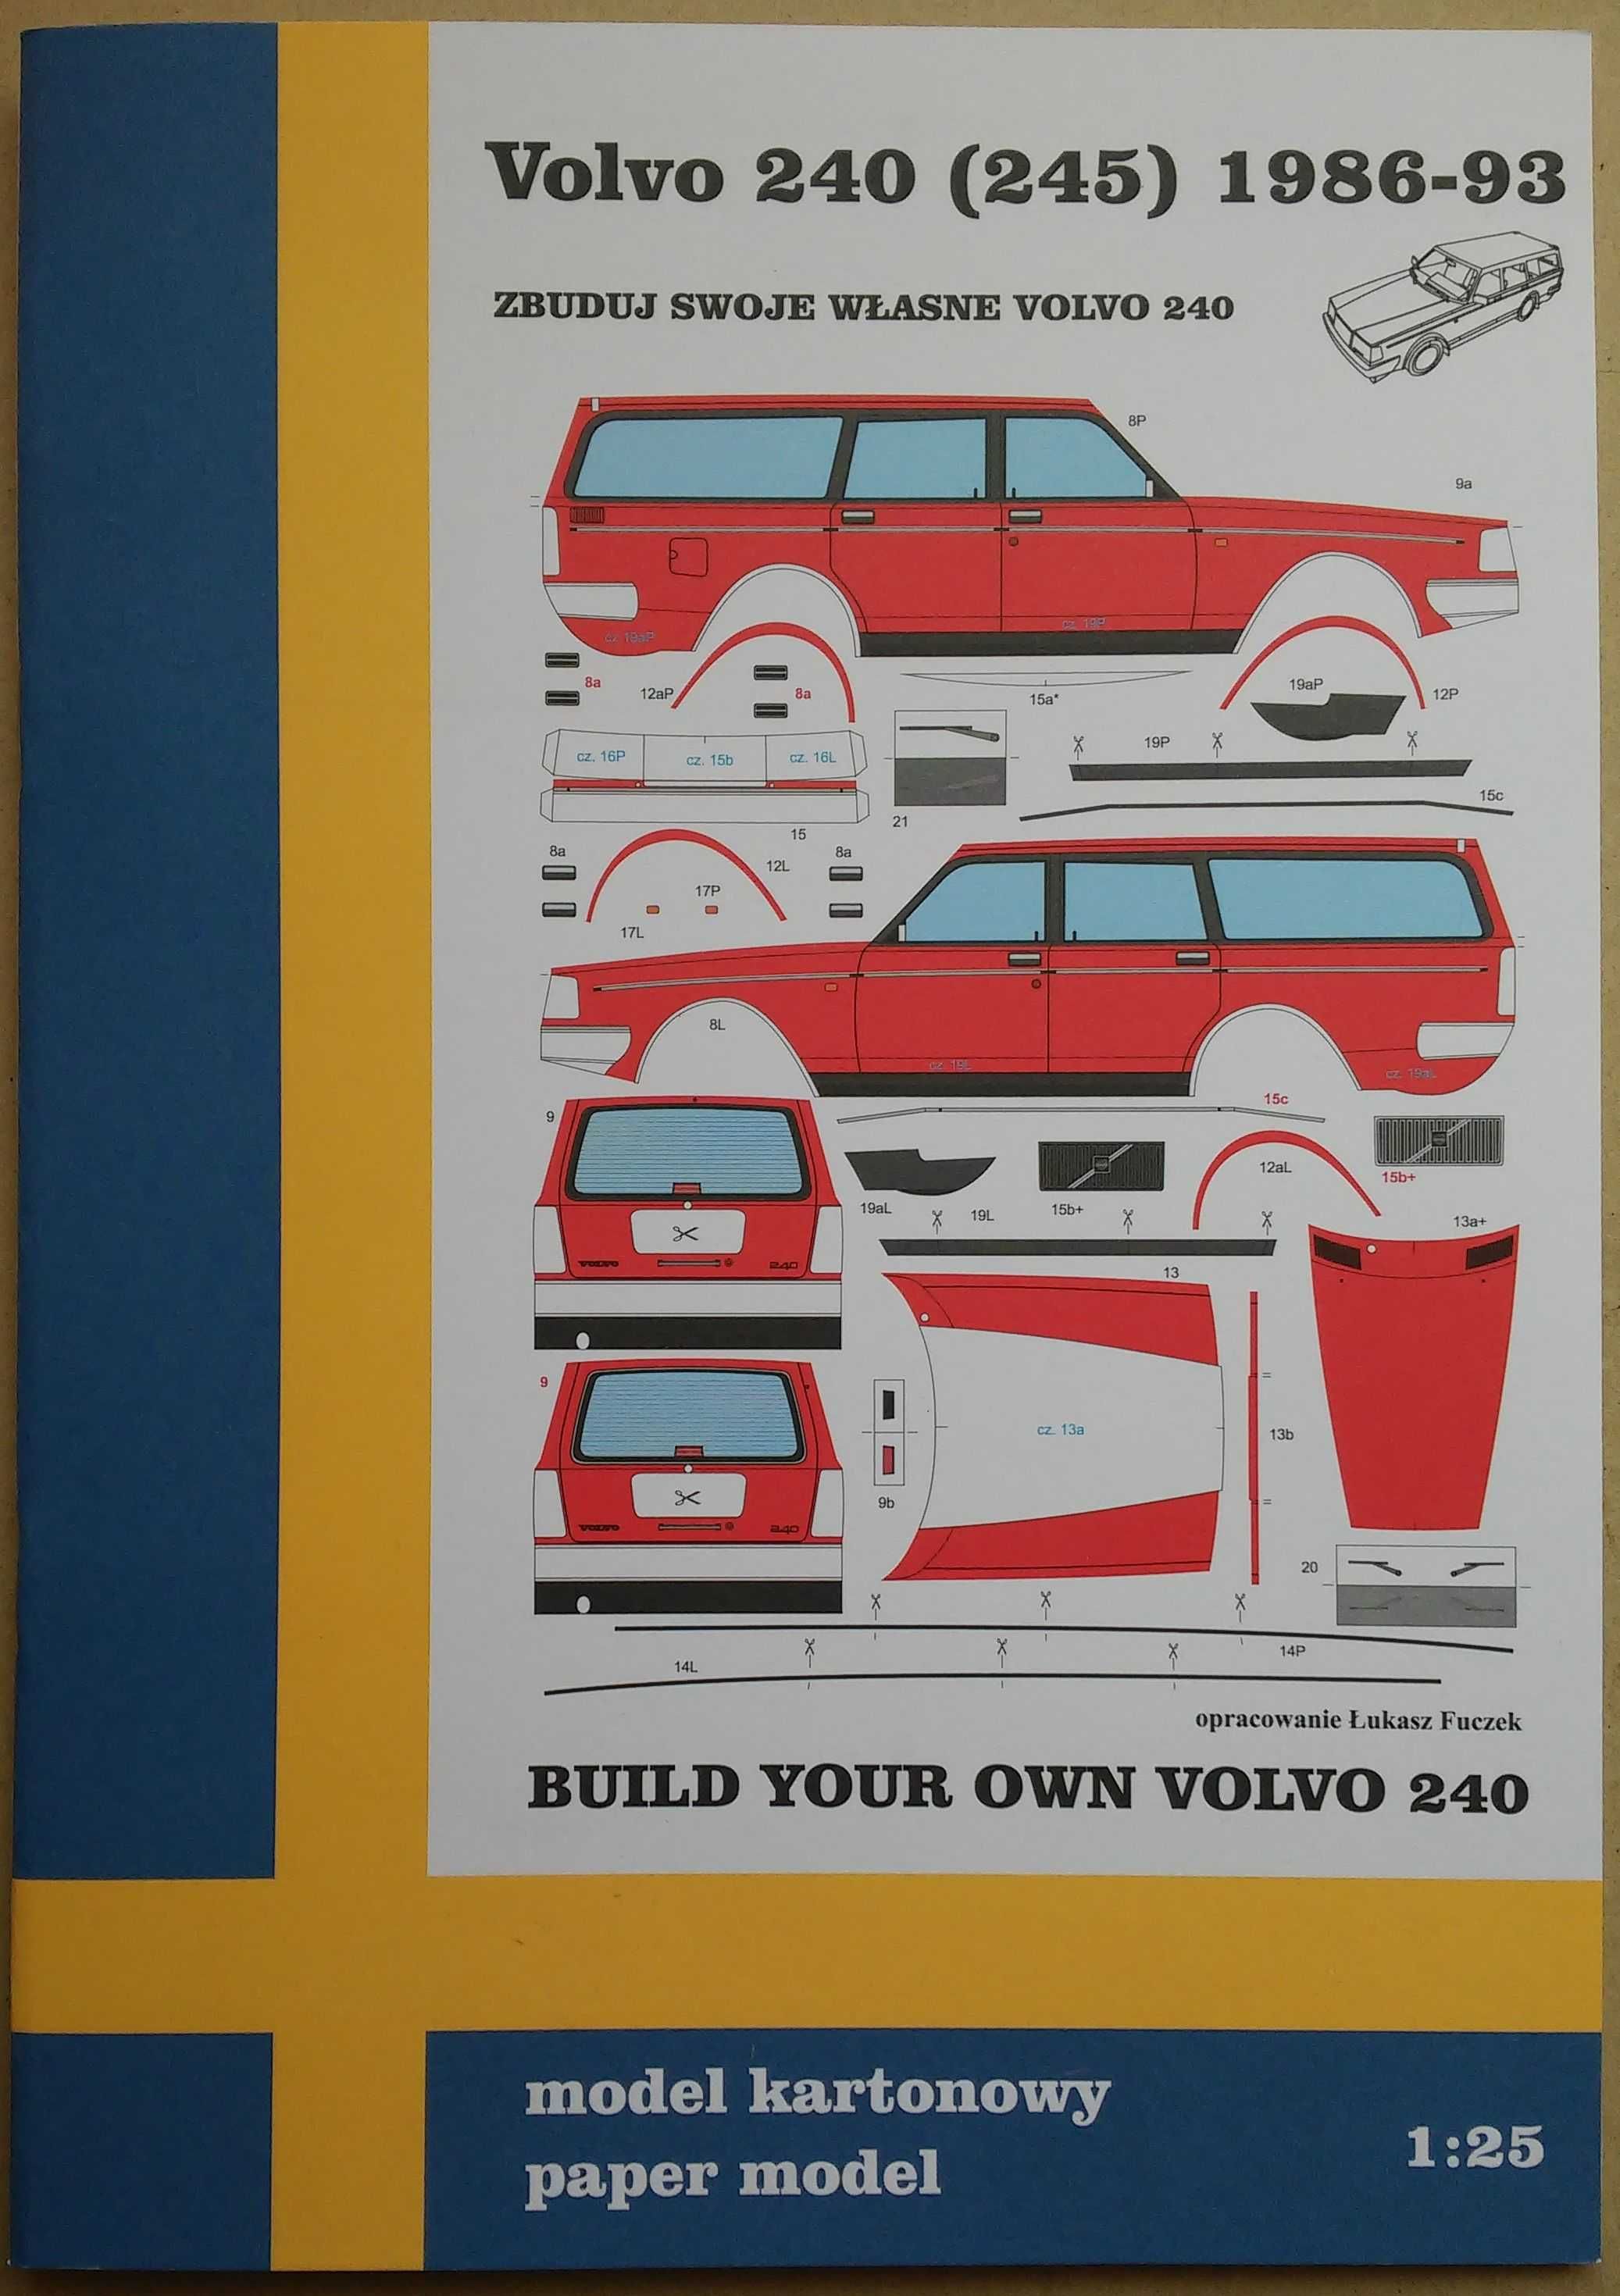 Volvo 240 kombi (245) model papierowy skala 1:25 modelarz kartonowy